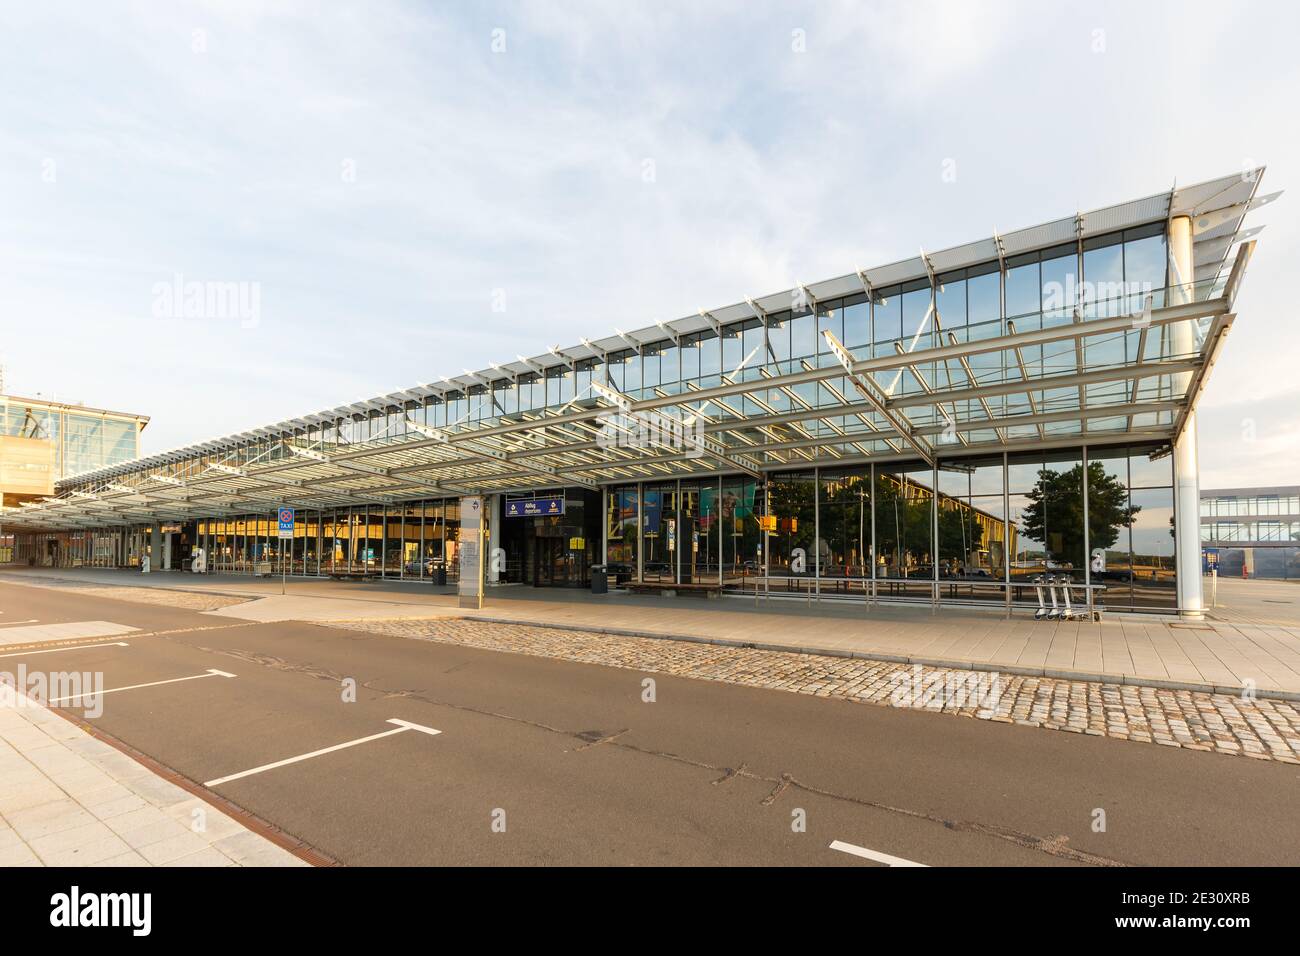 Leipzig, Allemagne - 18 août 2020 : terminal de l'aéroport de Leipzig Halle LEJ en Allemagne. Banque D'Images